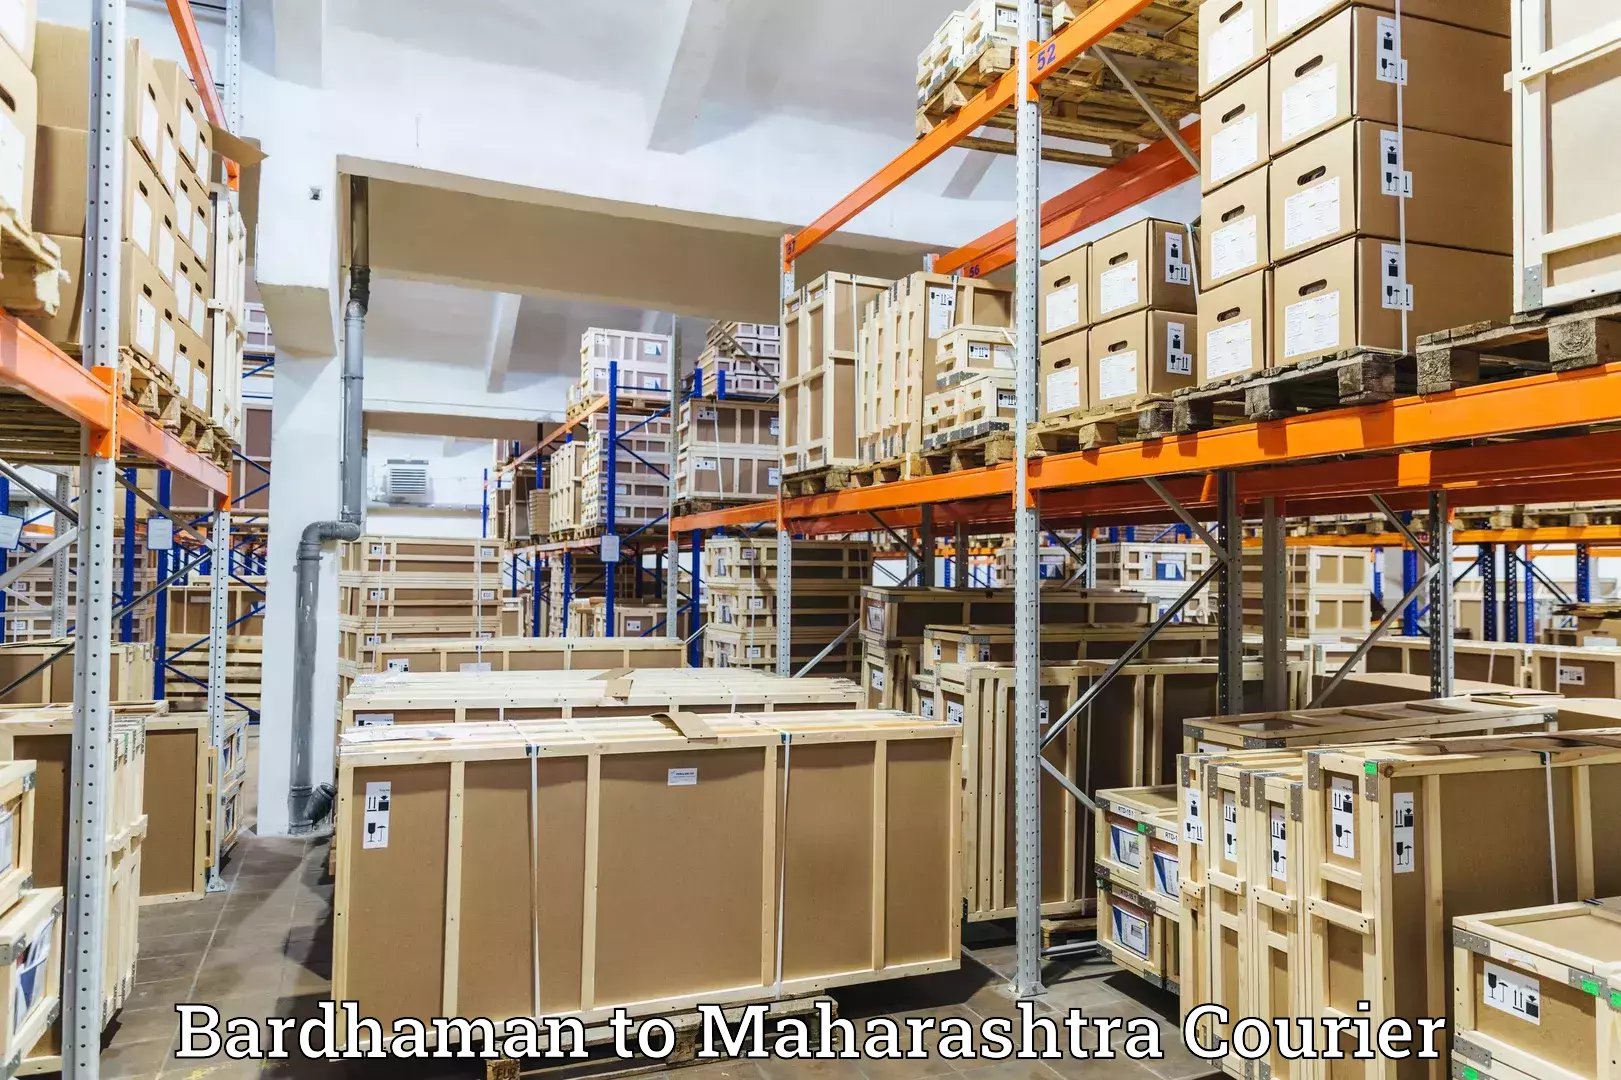 Express logistics providers Bardhaman to Shahada